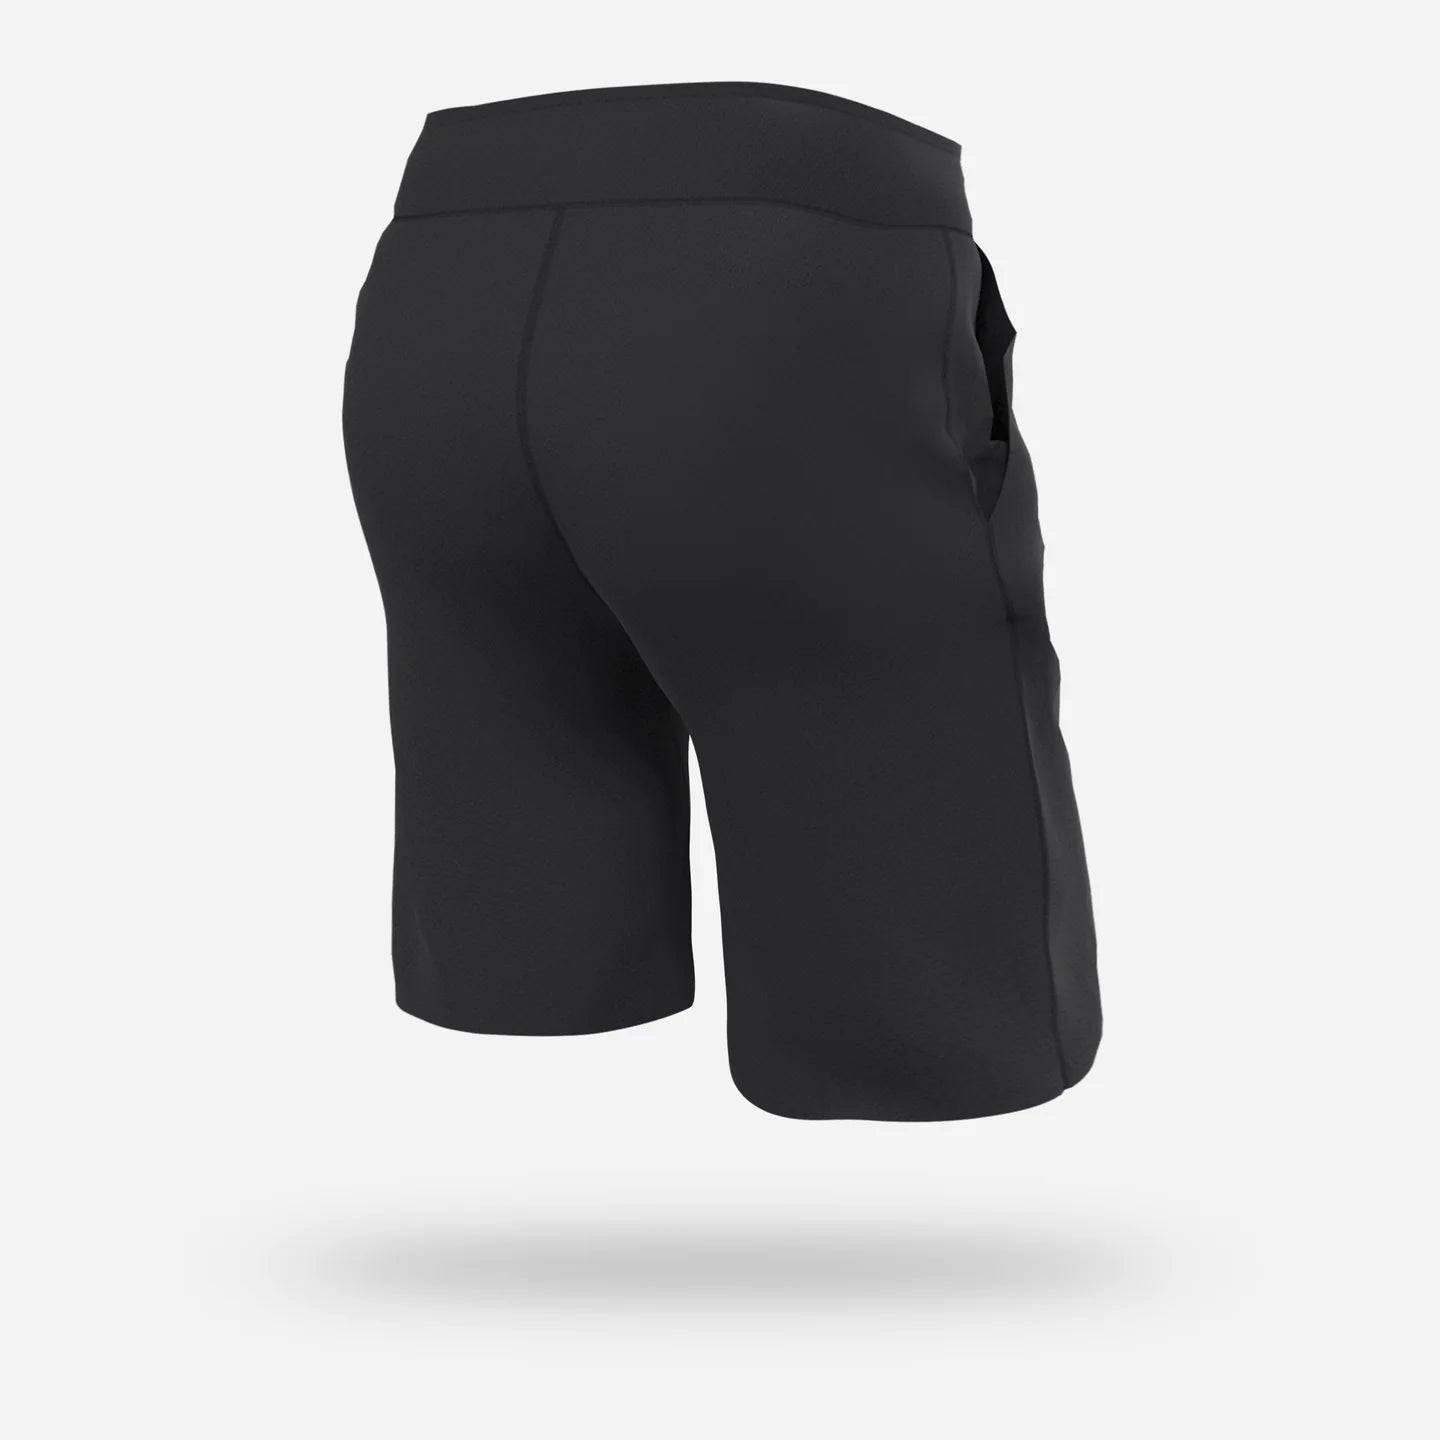 Bn3th - Sleepwear Shorts : Black 